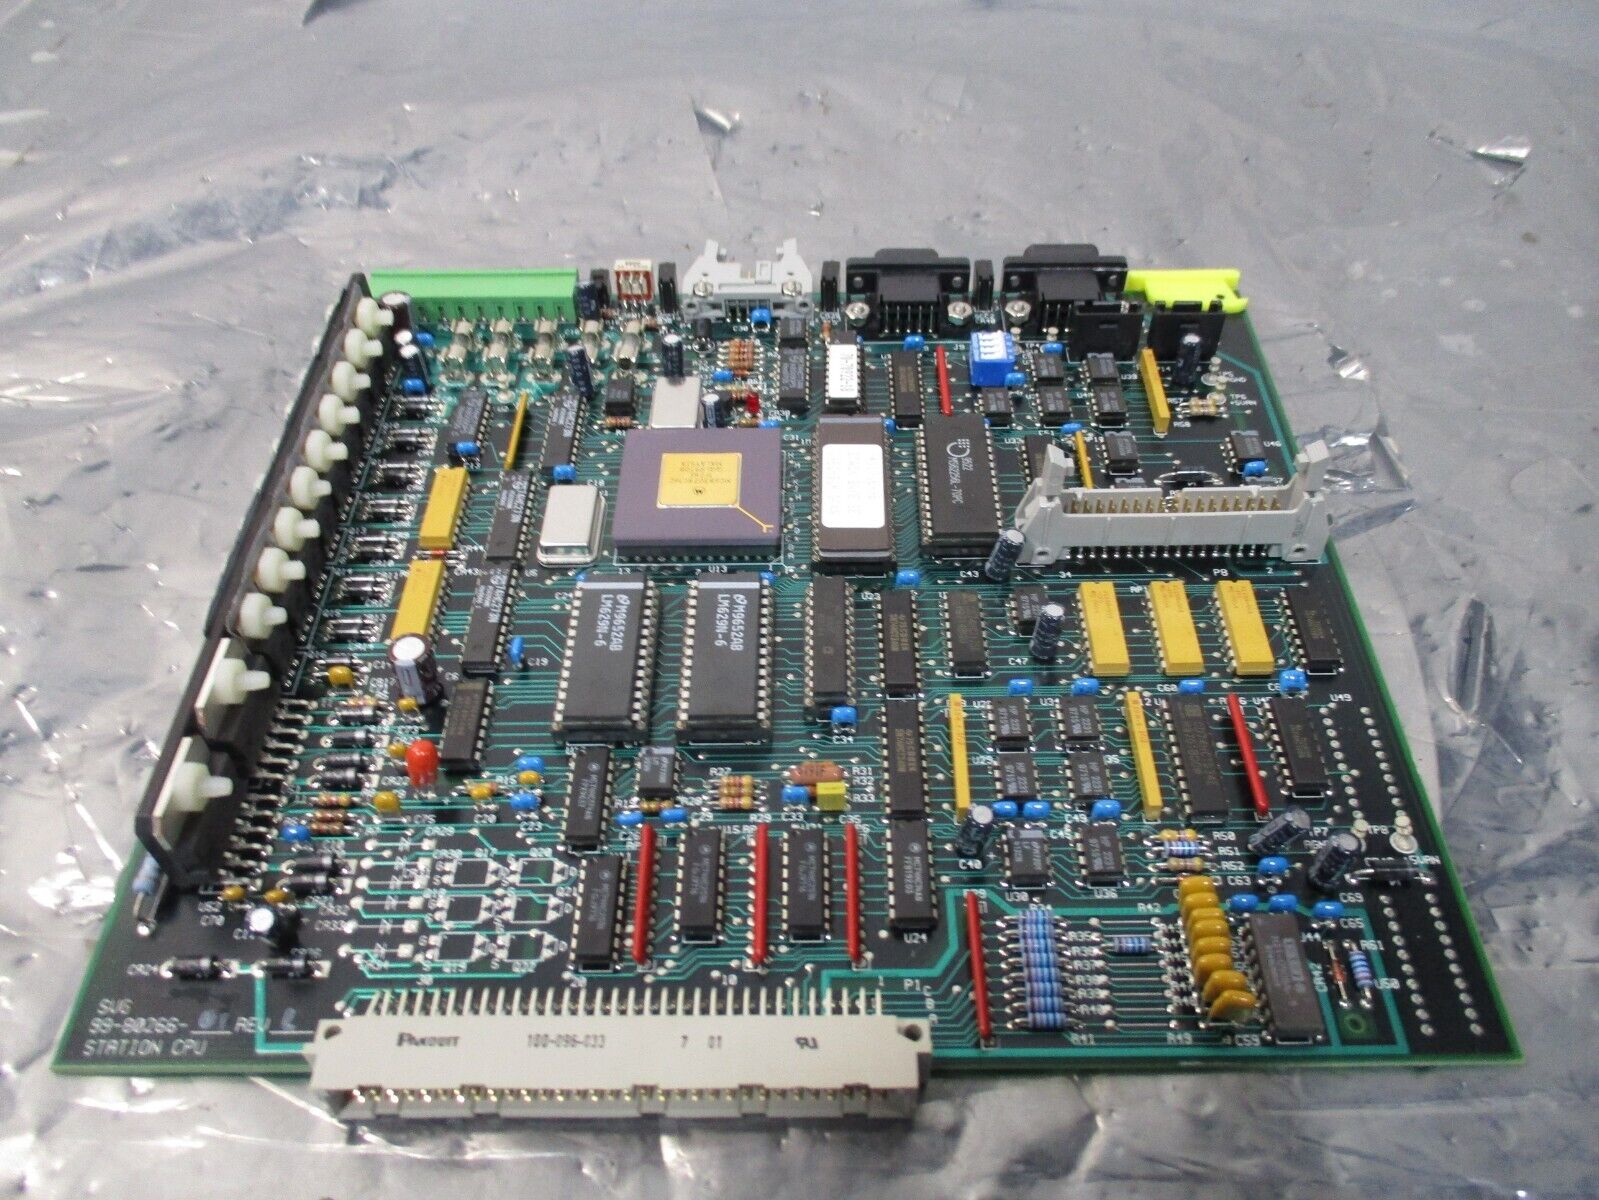 SVG 99-80266-01 STATION CPU PCB BOARD, REV L, 112167